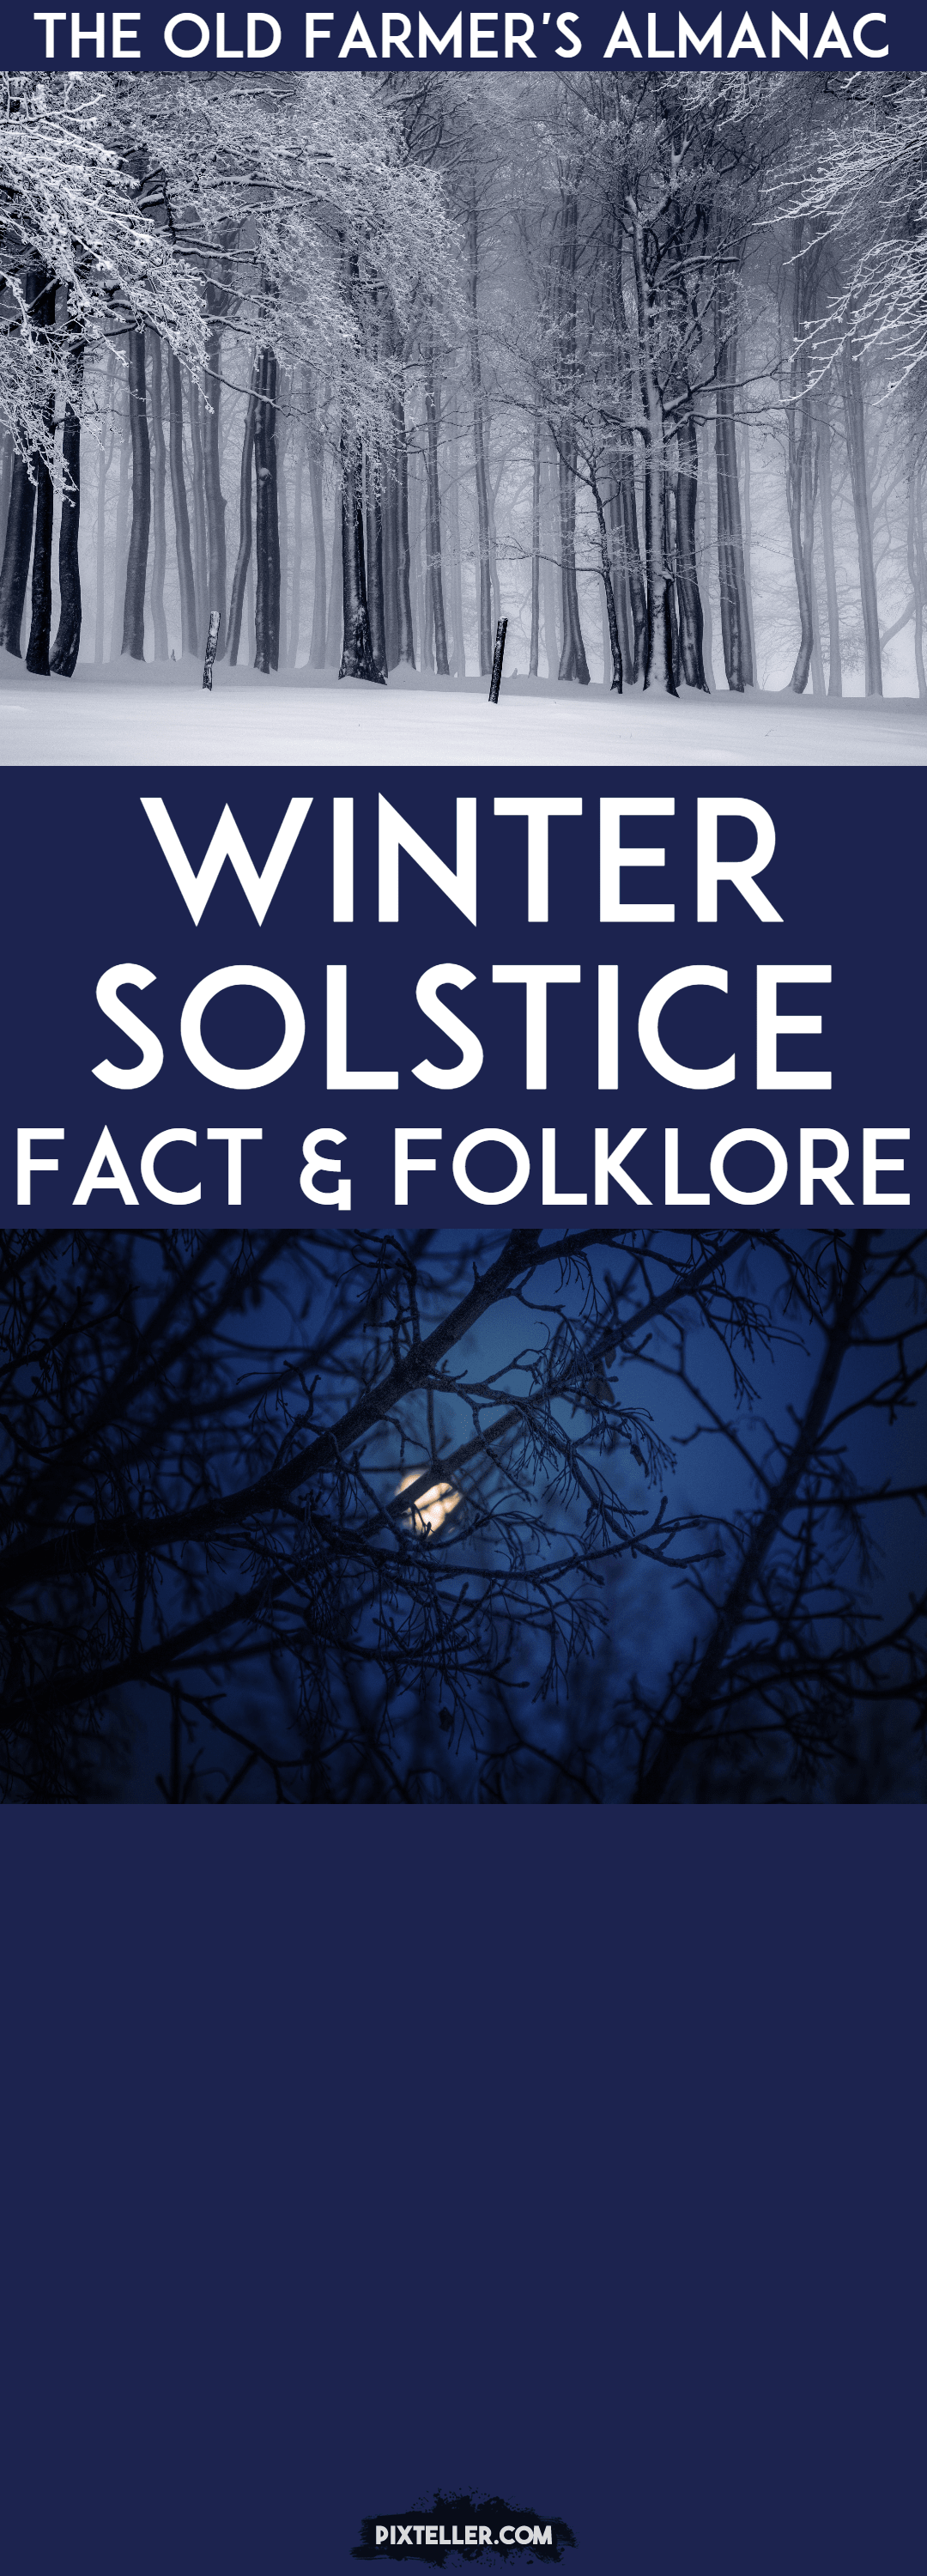 OFA 12-16-16 winter solstice Design 